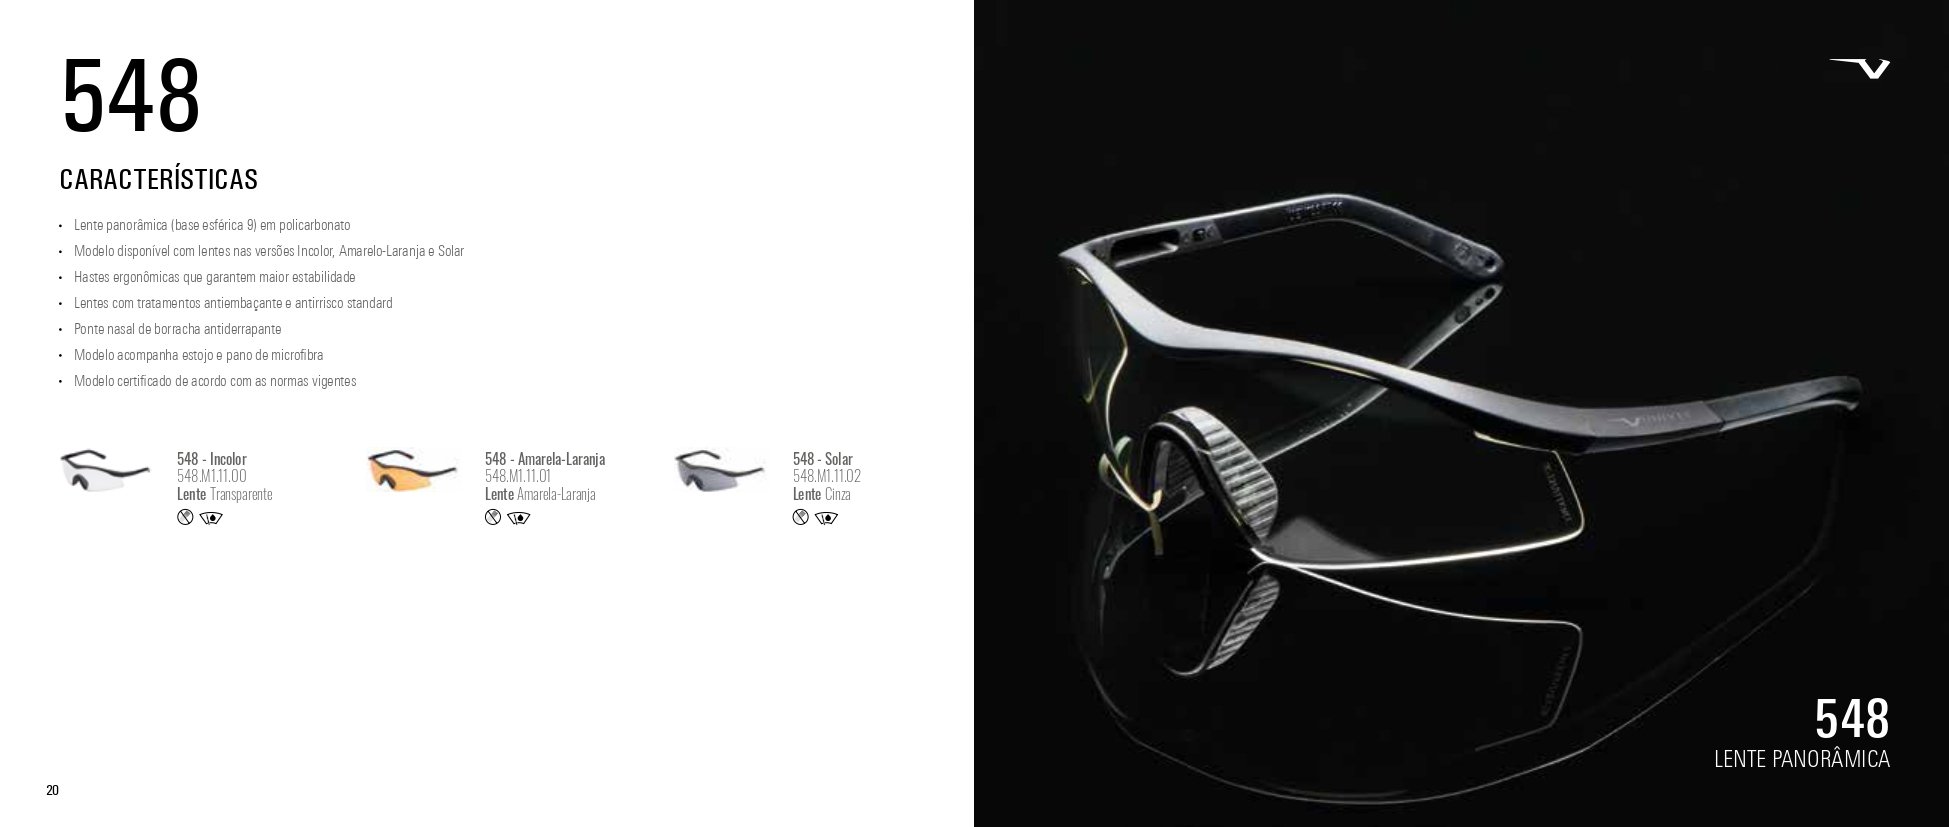 Óculos Segurança Ideal Para Airsoft Proteção Balistica 548 - 10